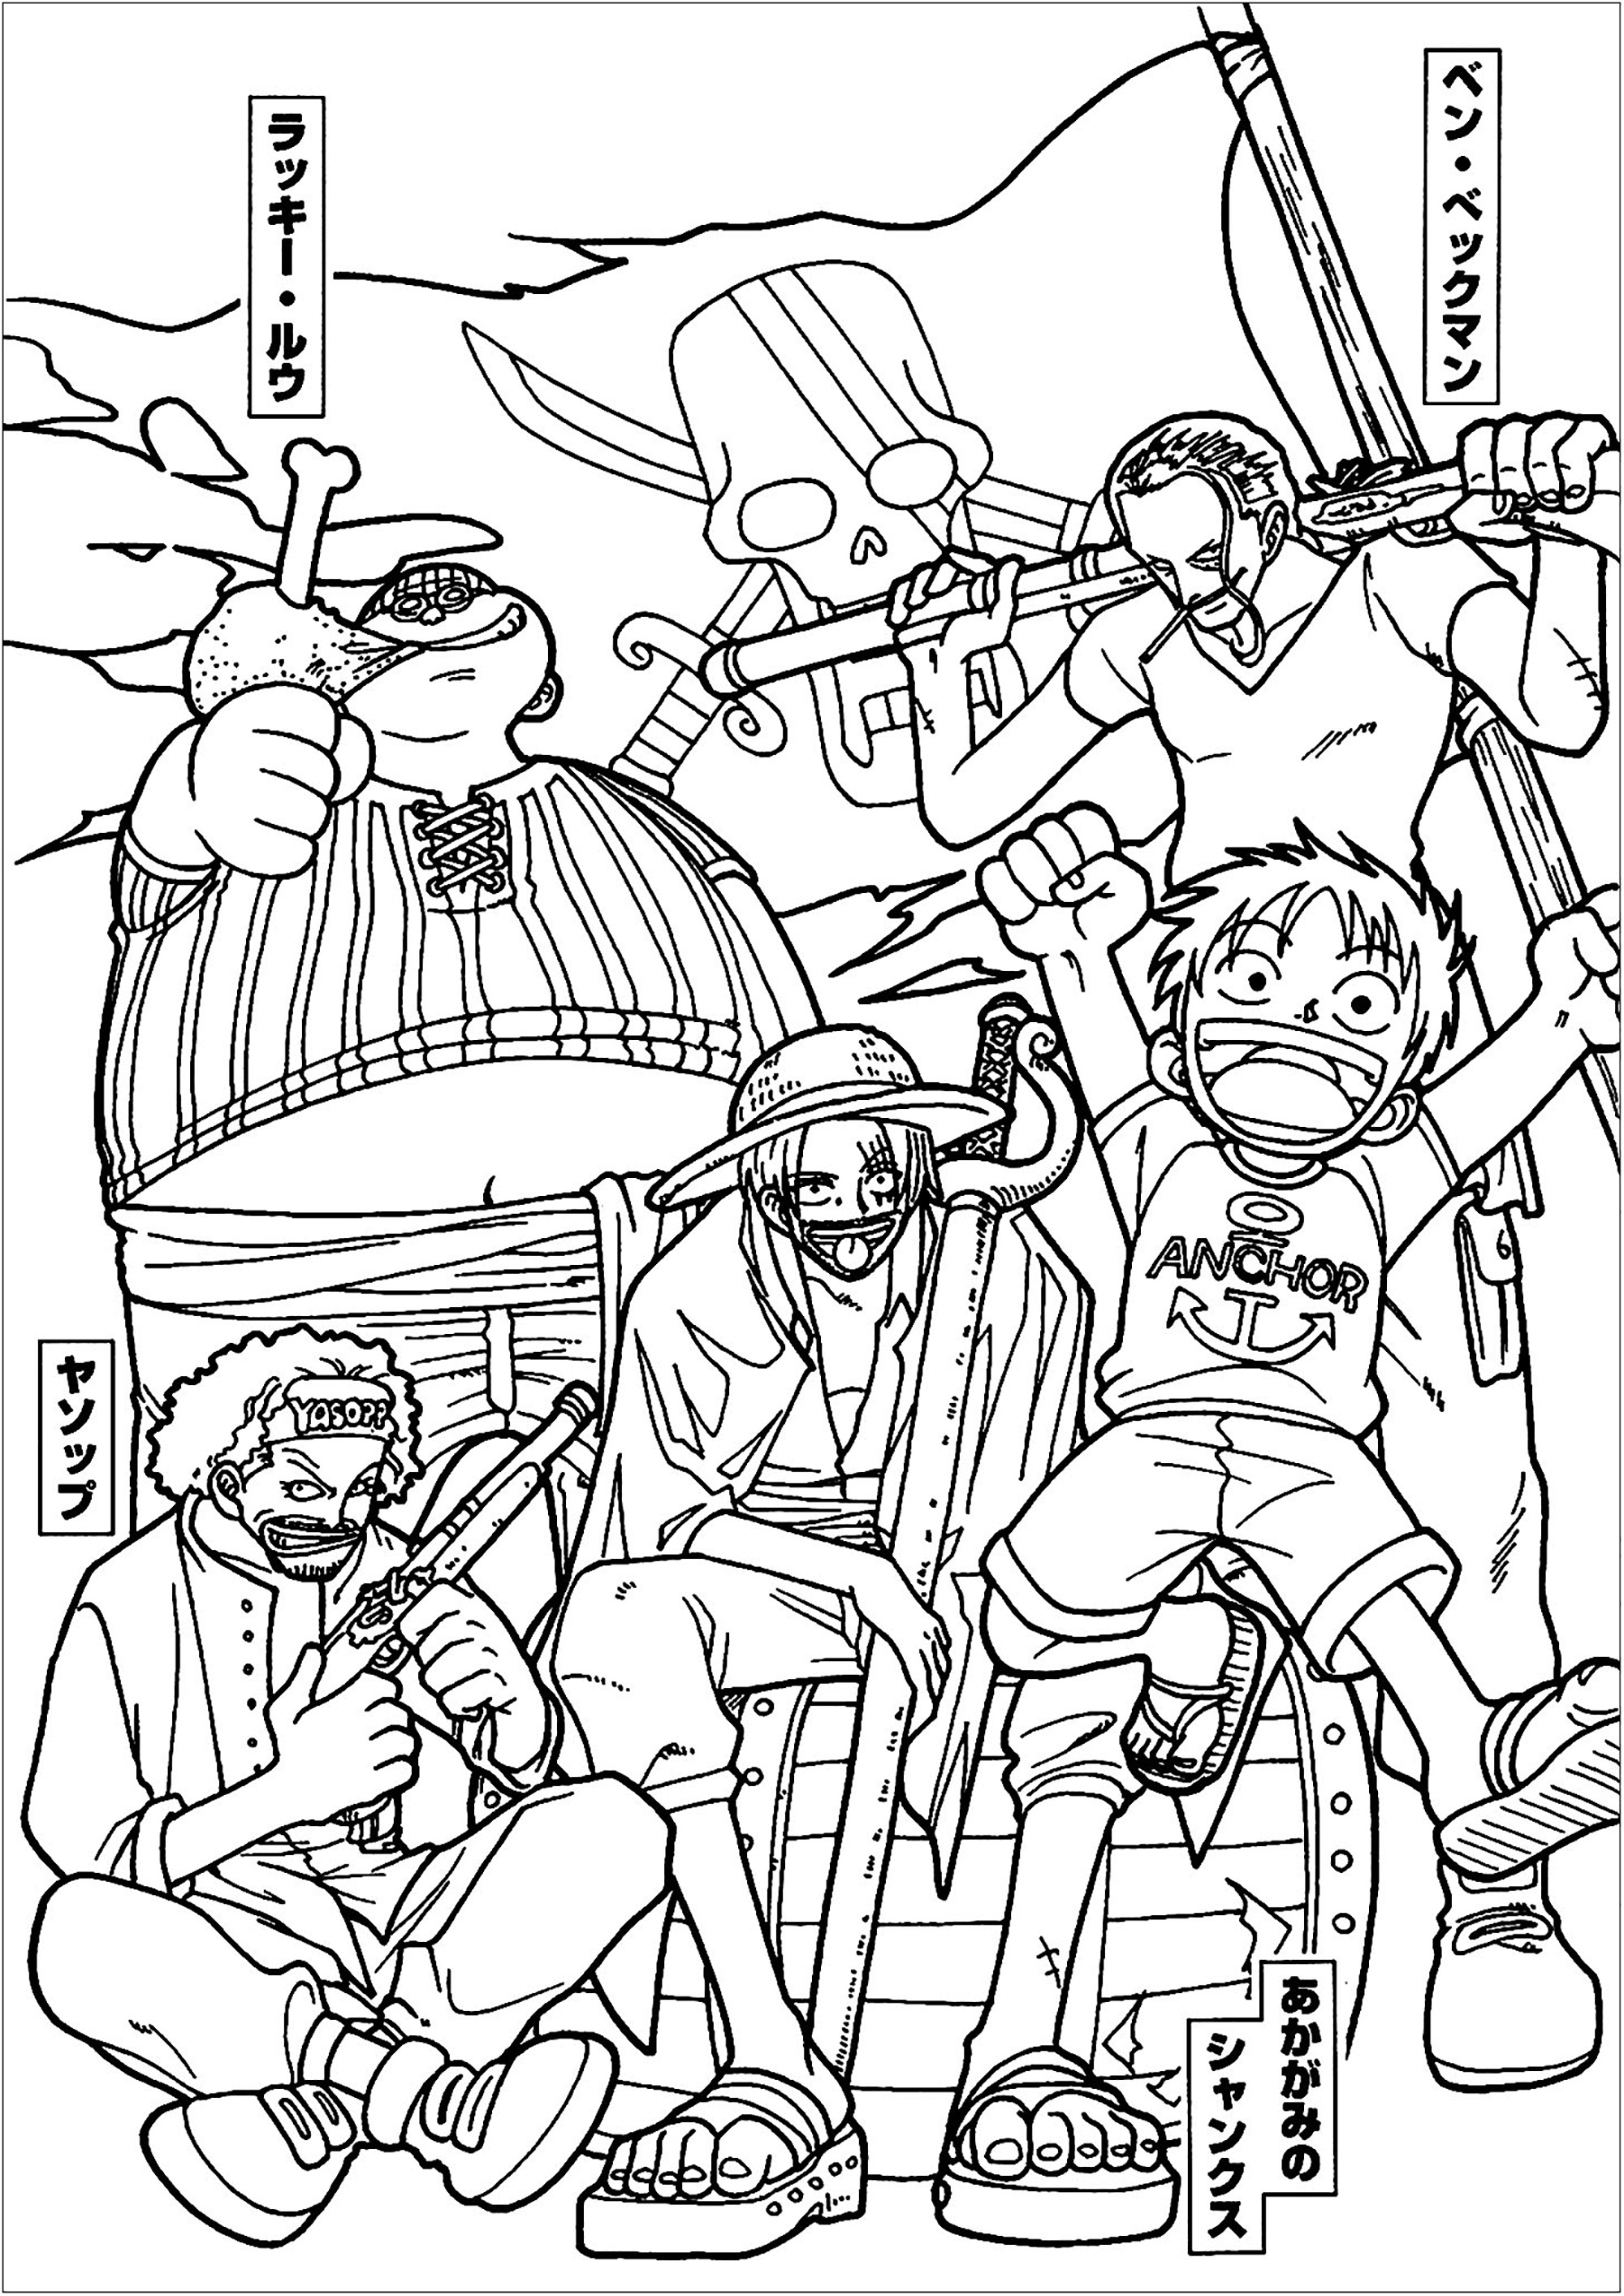 Coloriage avec les personnages de One piece. 'One Piece' est un manga et anime créé par Eiichiro Oda en 1997. Il a été adapté en série live action par Netflix en 2023